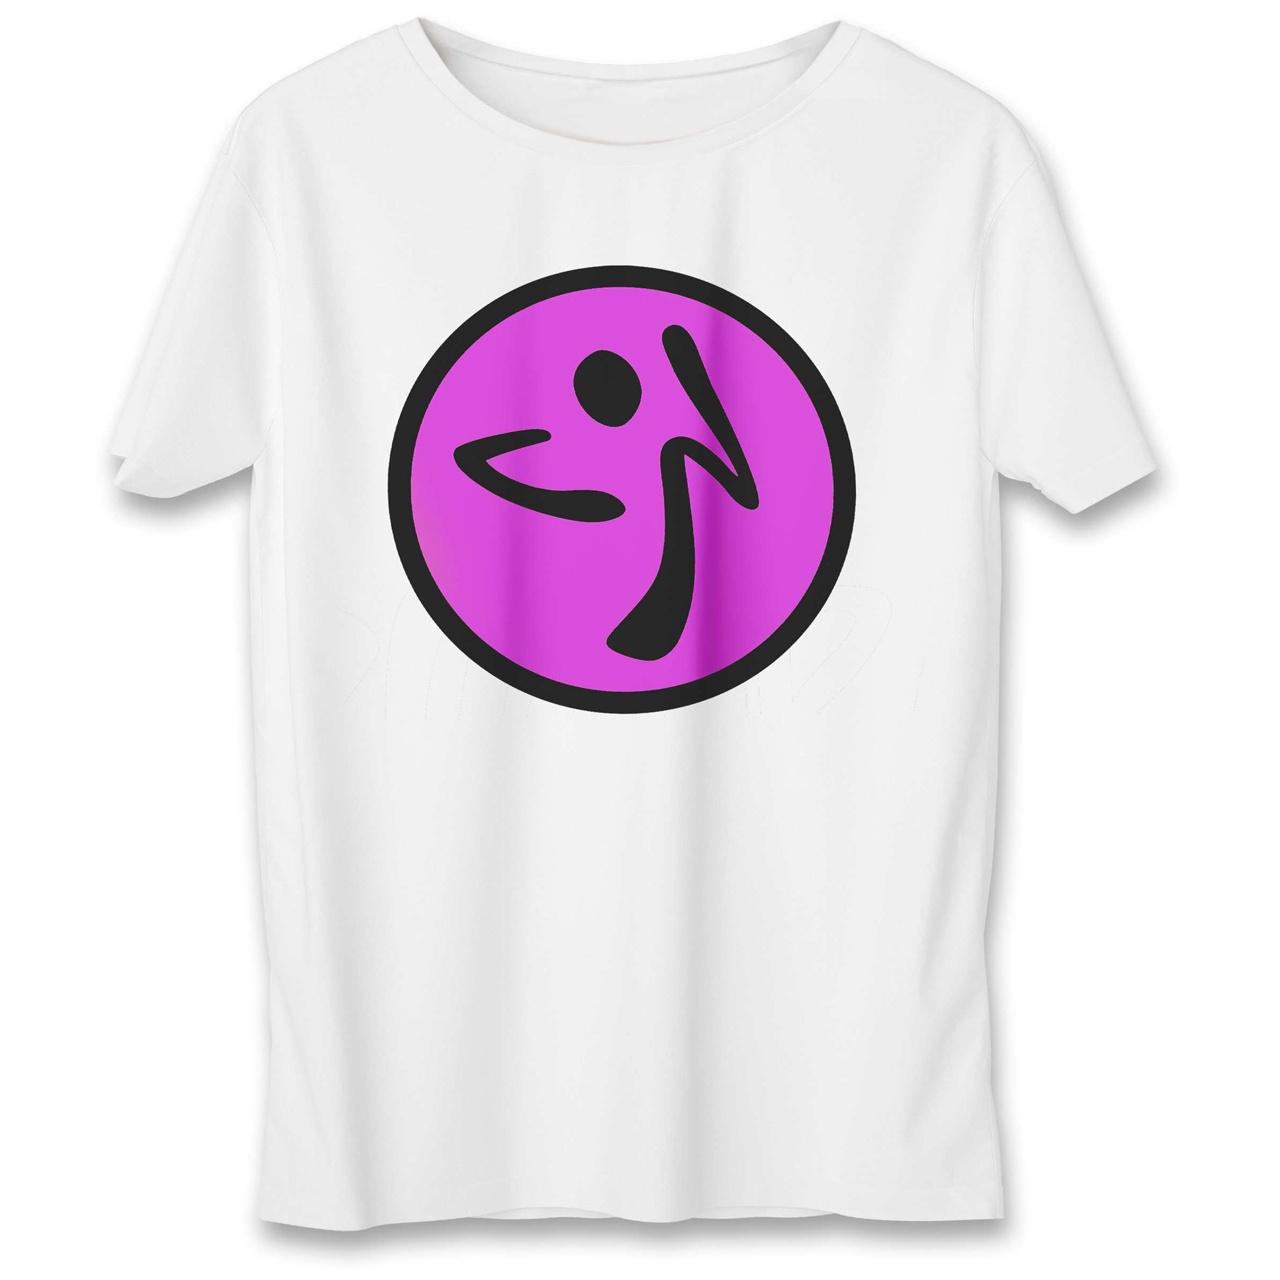 تی شرت به رسم طرح زومبا کد 550